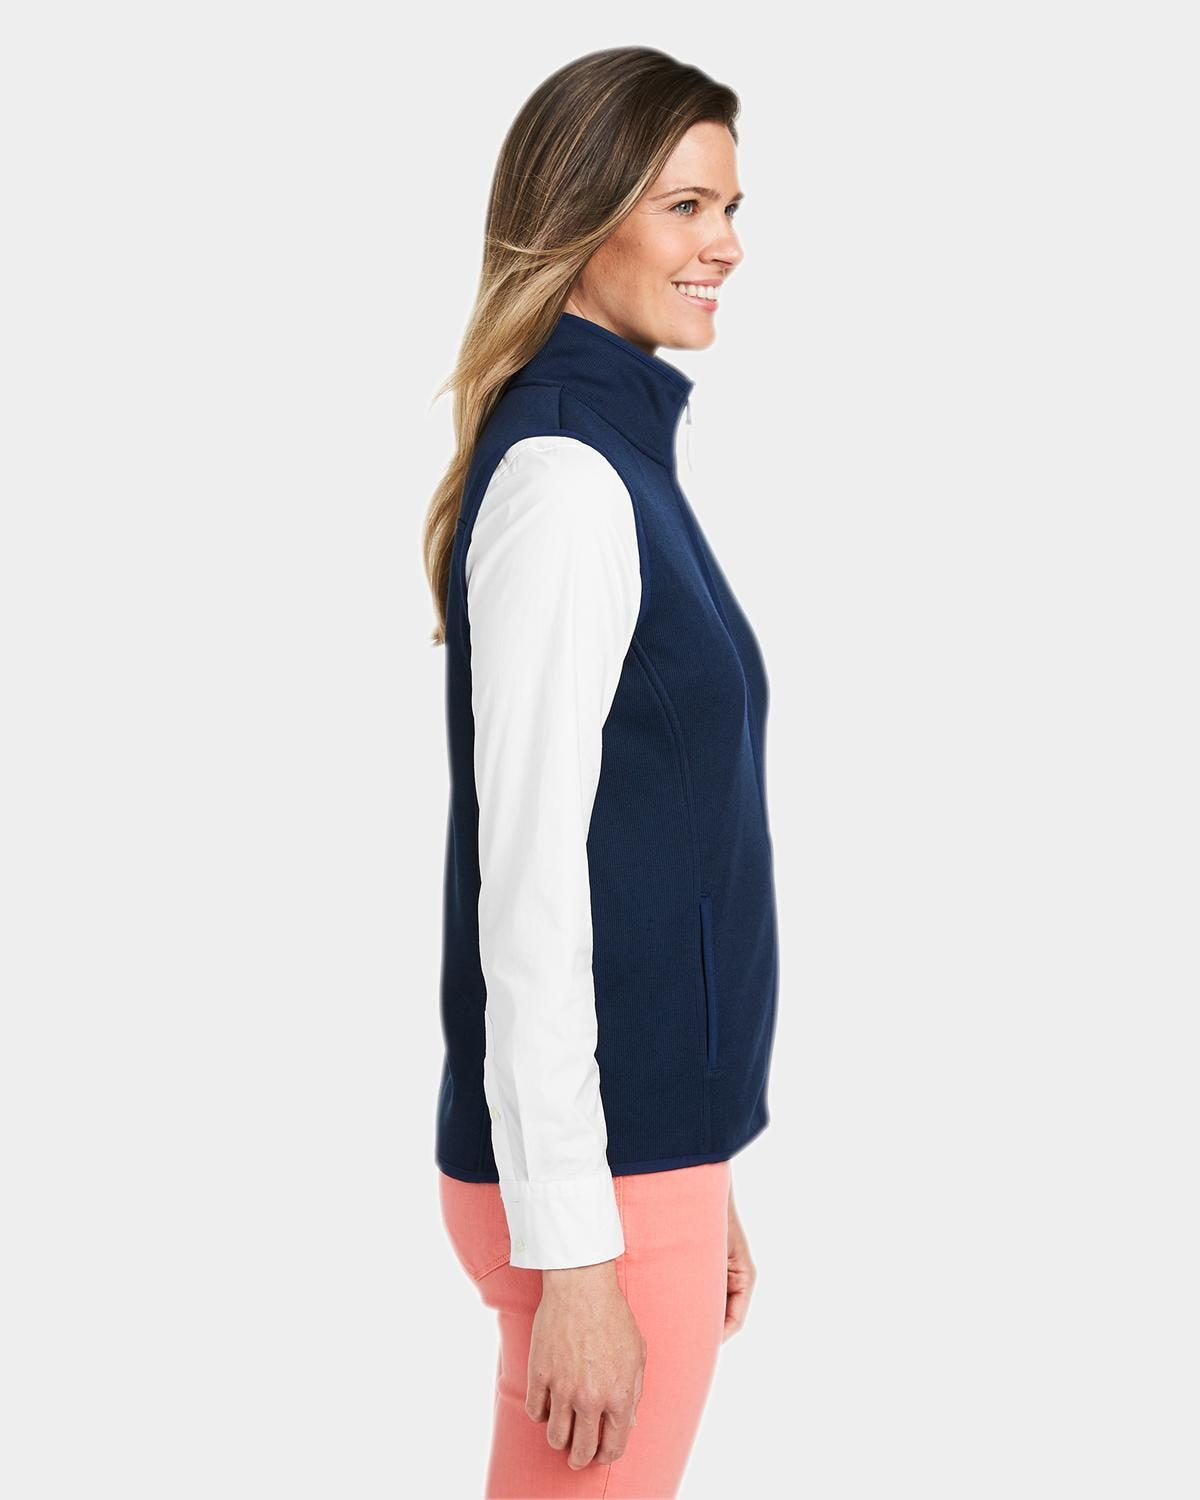 Vineyard Vines Custom Ladies Sweater Fleece Vests, Vineyard Navy